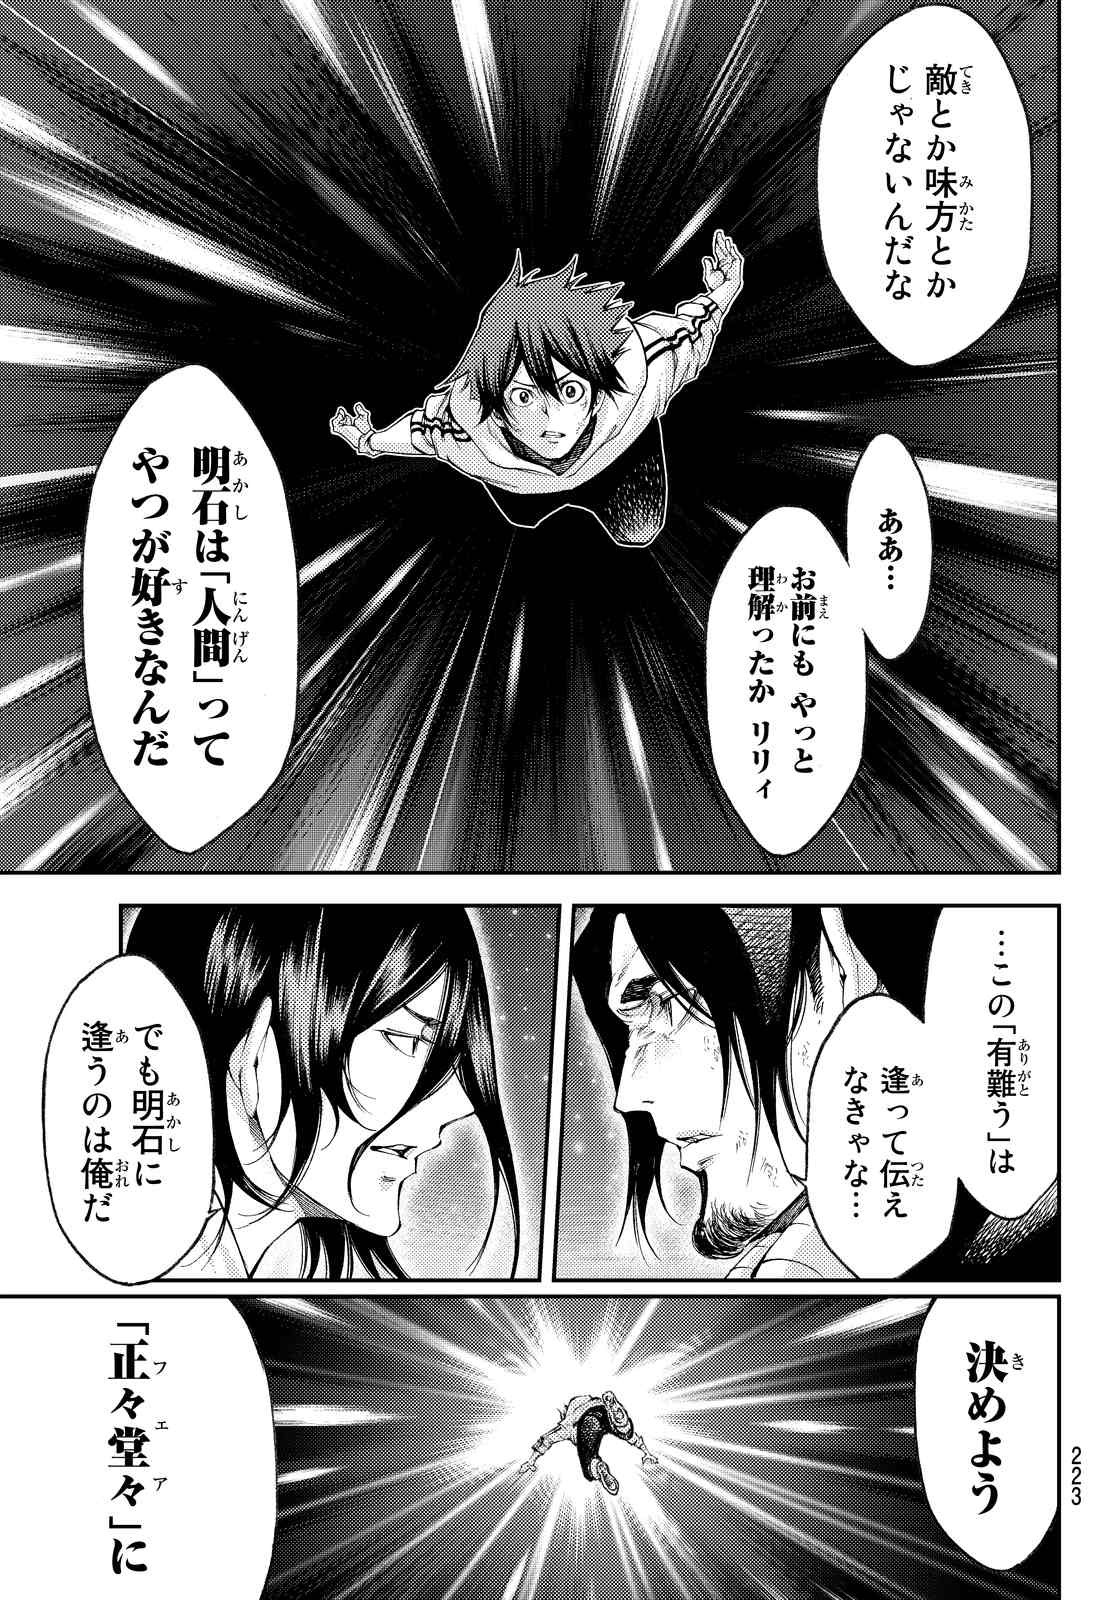 Kamisama no Ituori - Chapter 178 - Page 3